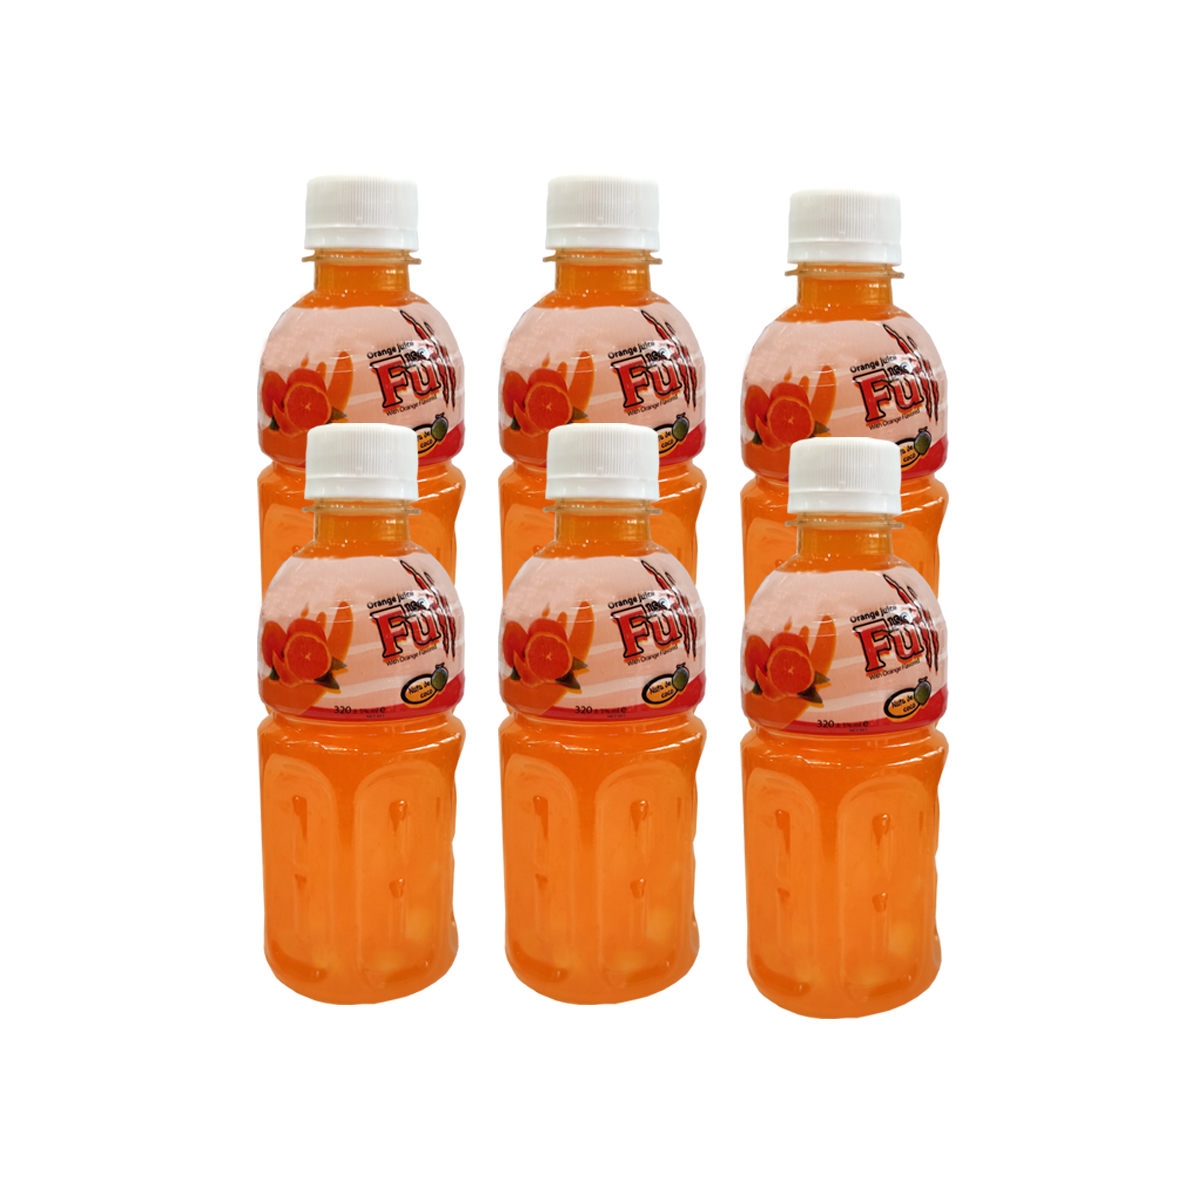 نوشیدنی بدون گاز پرتقال حاوی تکه های نارگیل ایزوفول - 320 میلی لیتر بسته 6 عددی